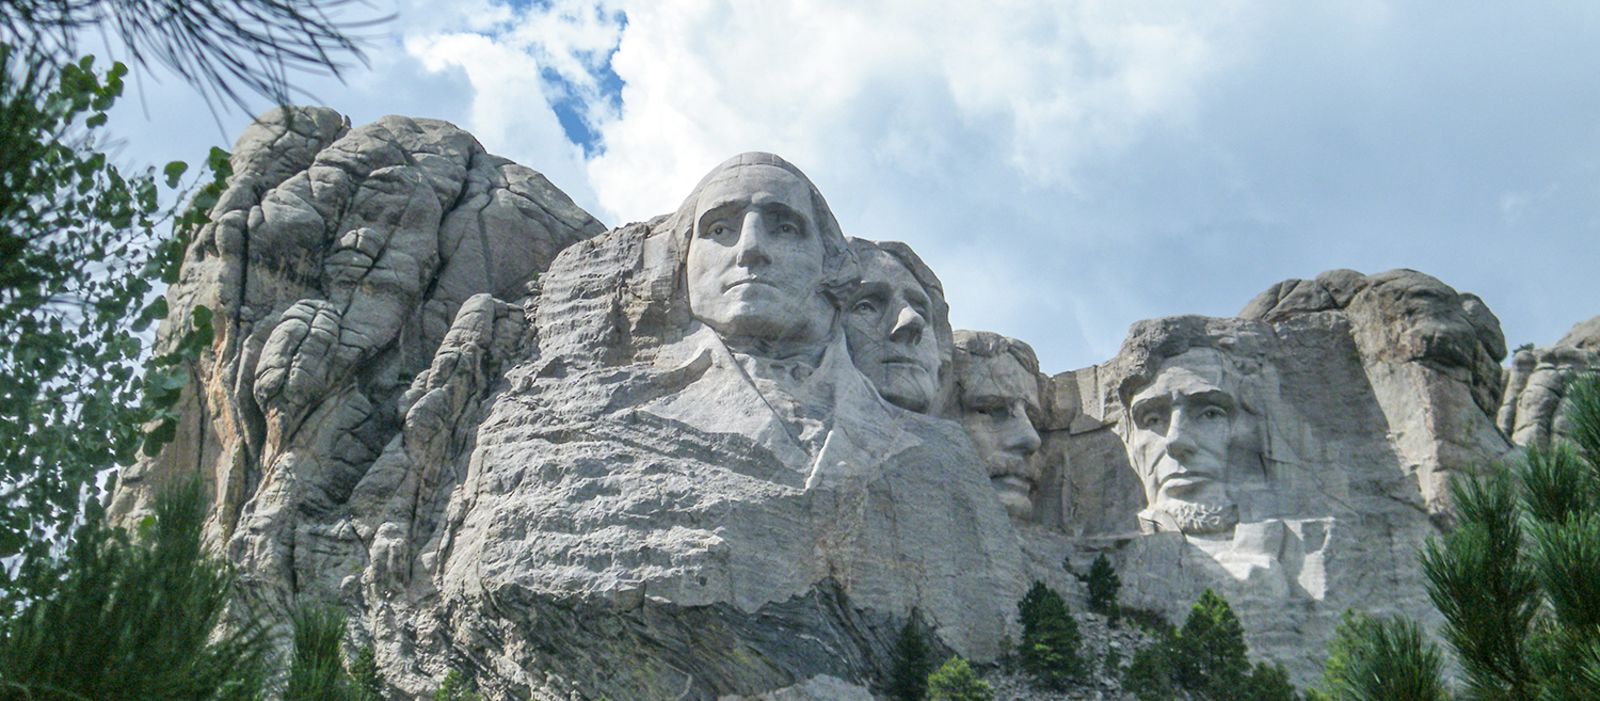 Das Mount Rushmore National Memorial in South Dakota